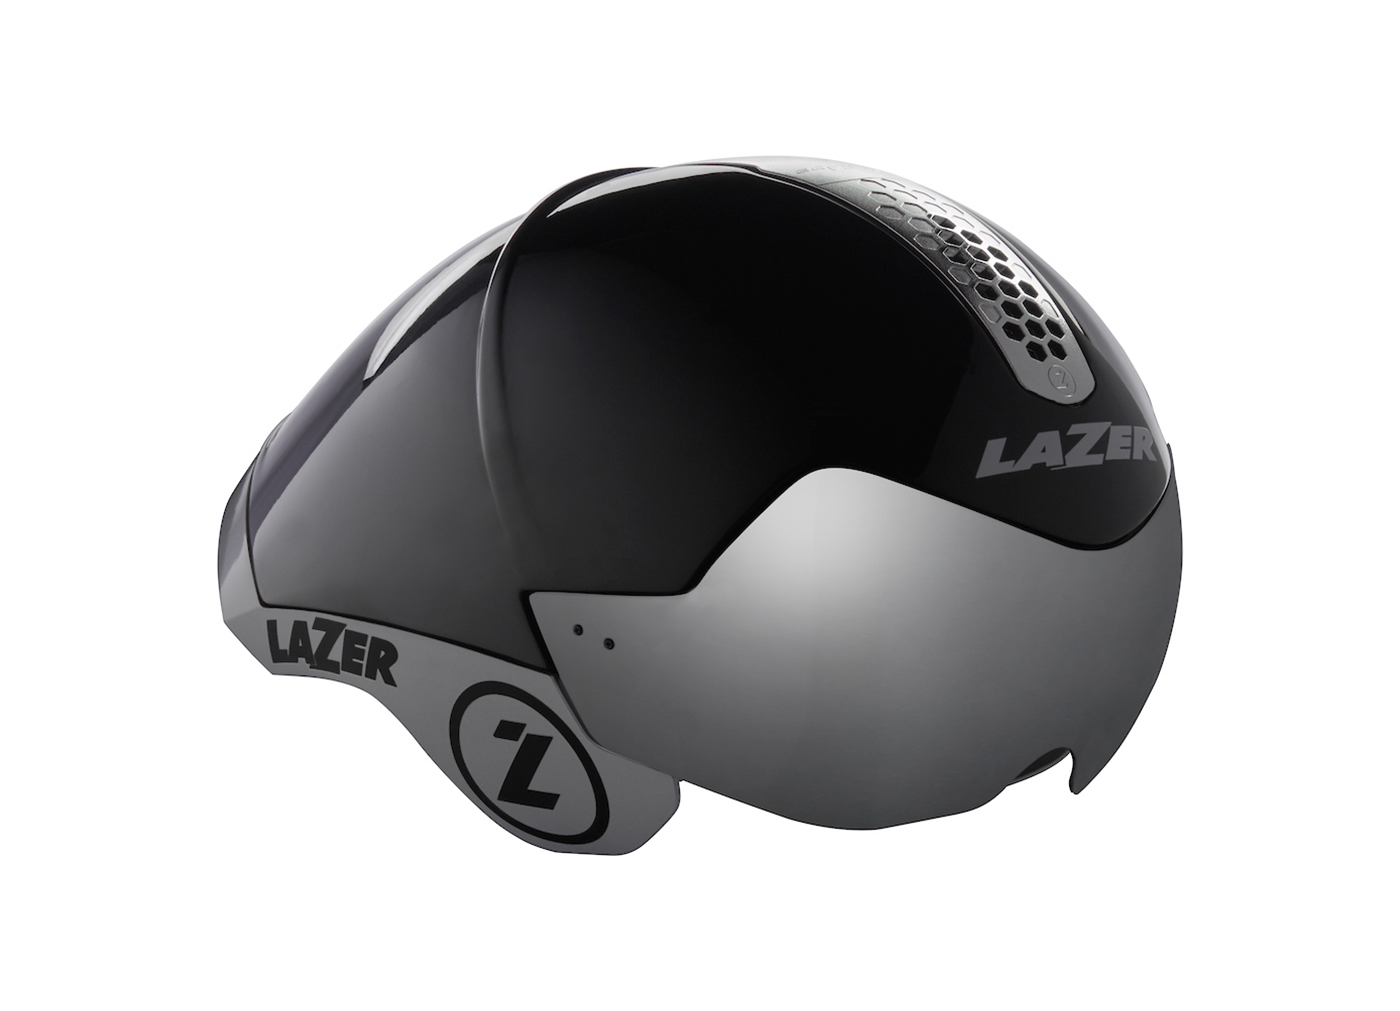 Wasp Air - Triathlon helmet | Lazer